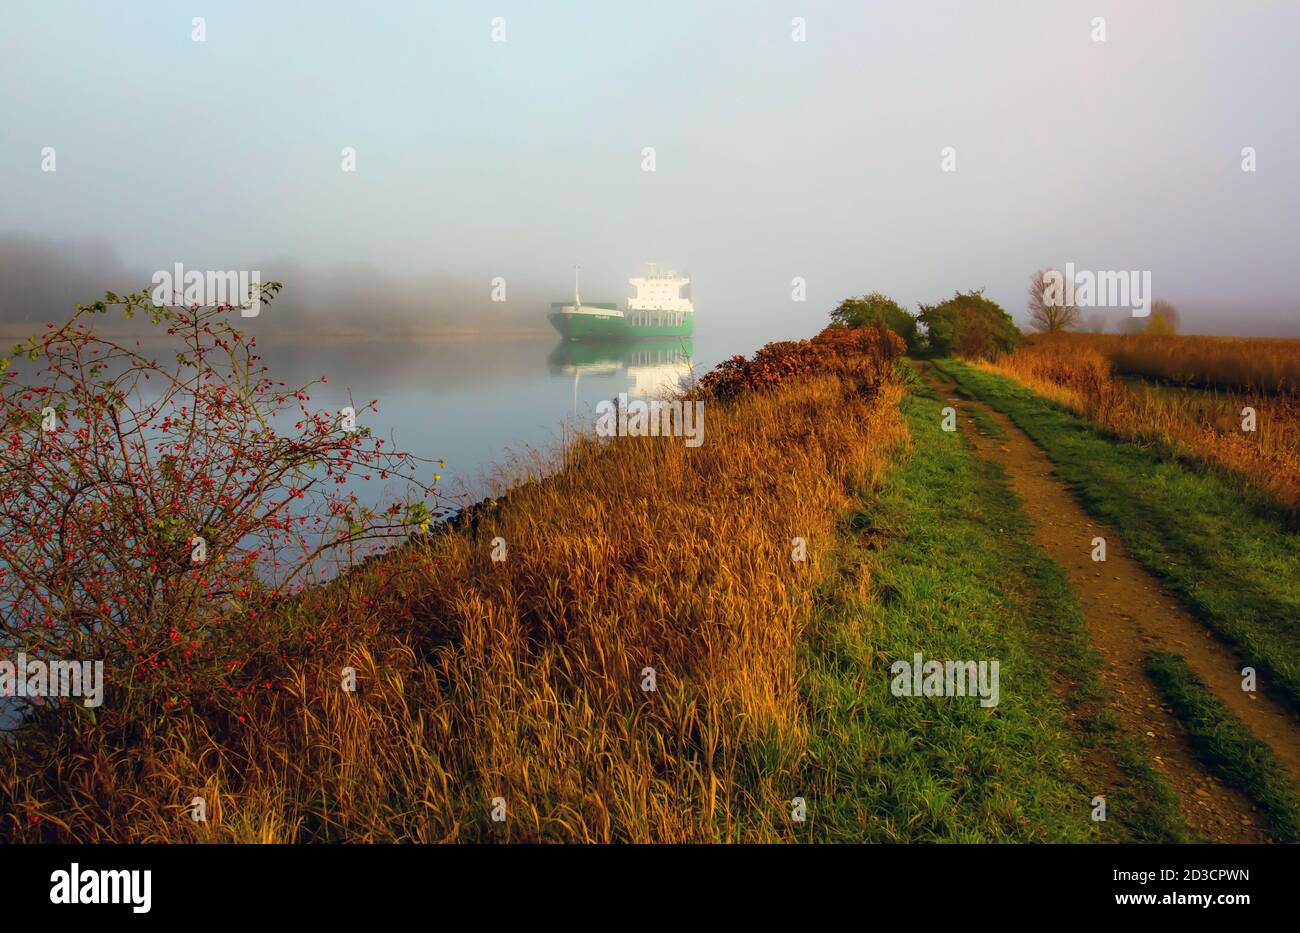 Das Schiff - Polaris VG - erschien aus dem nichts. Er fuhr auf der Trave im Nebel. Stockfoto